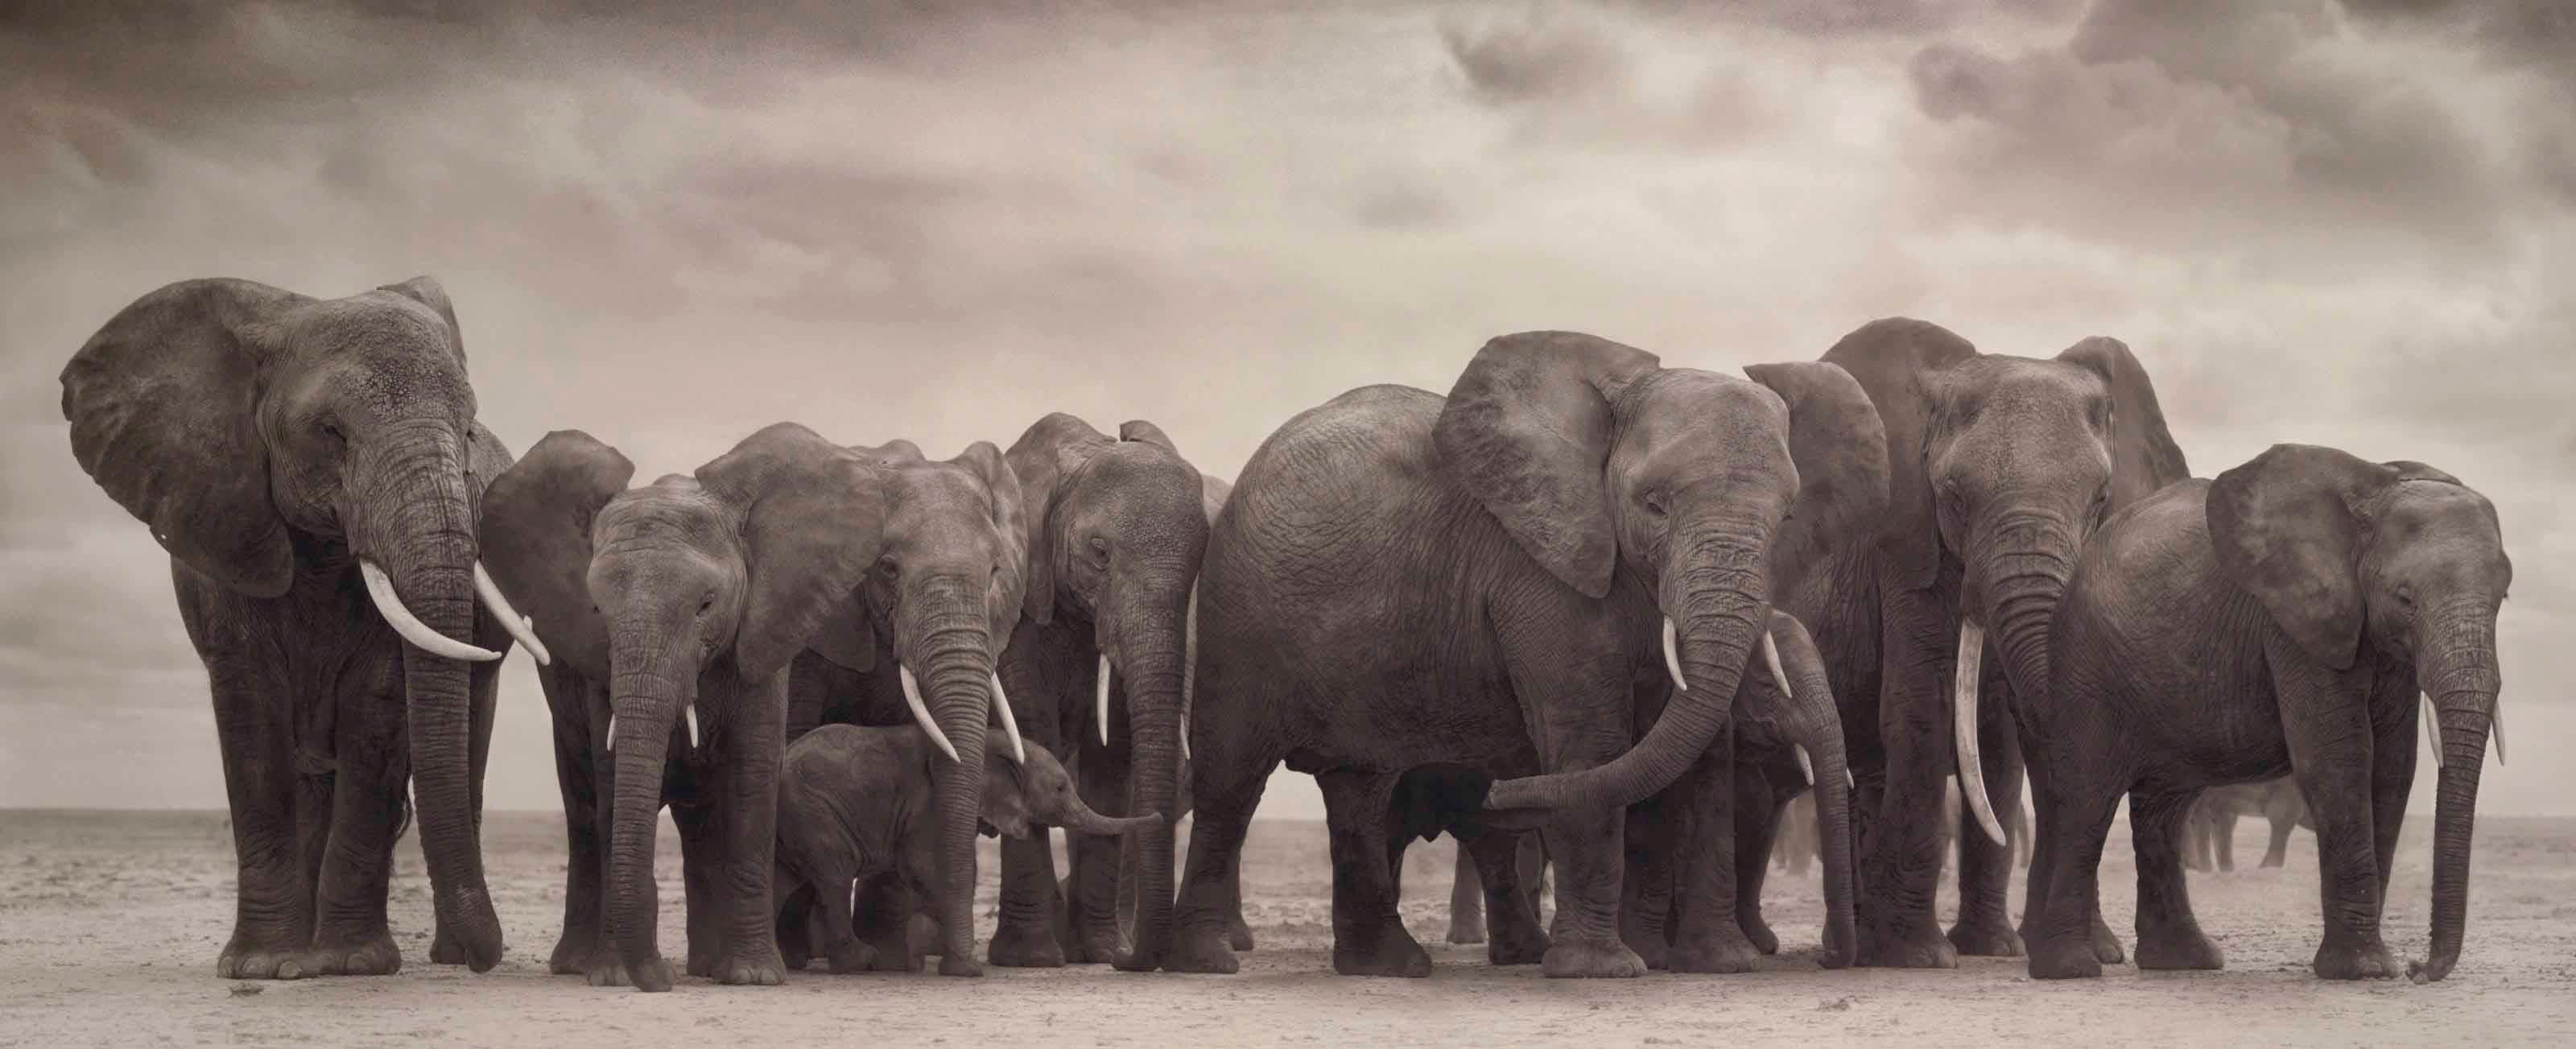 NICK BRANDT (*1966, England)
Elefantengruppe auf nackter Erde, Amboseli
2008
Archivträchtiger Tintenstrahldruck
Blatt 88,9 x 215,9 cm (35 x 85 in.)
Auflage von 8, plus AP's; Ed. Nr. 8/8
Gerahmt

Nick Brandt ist ein zeitgenössischer englischer